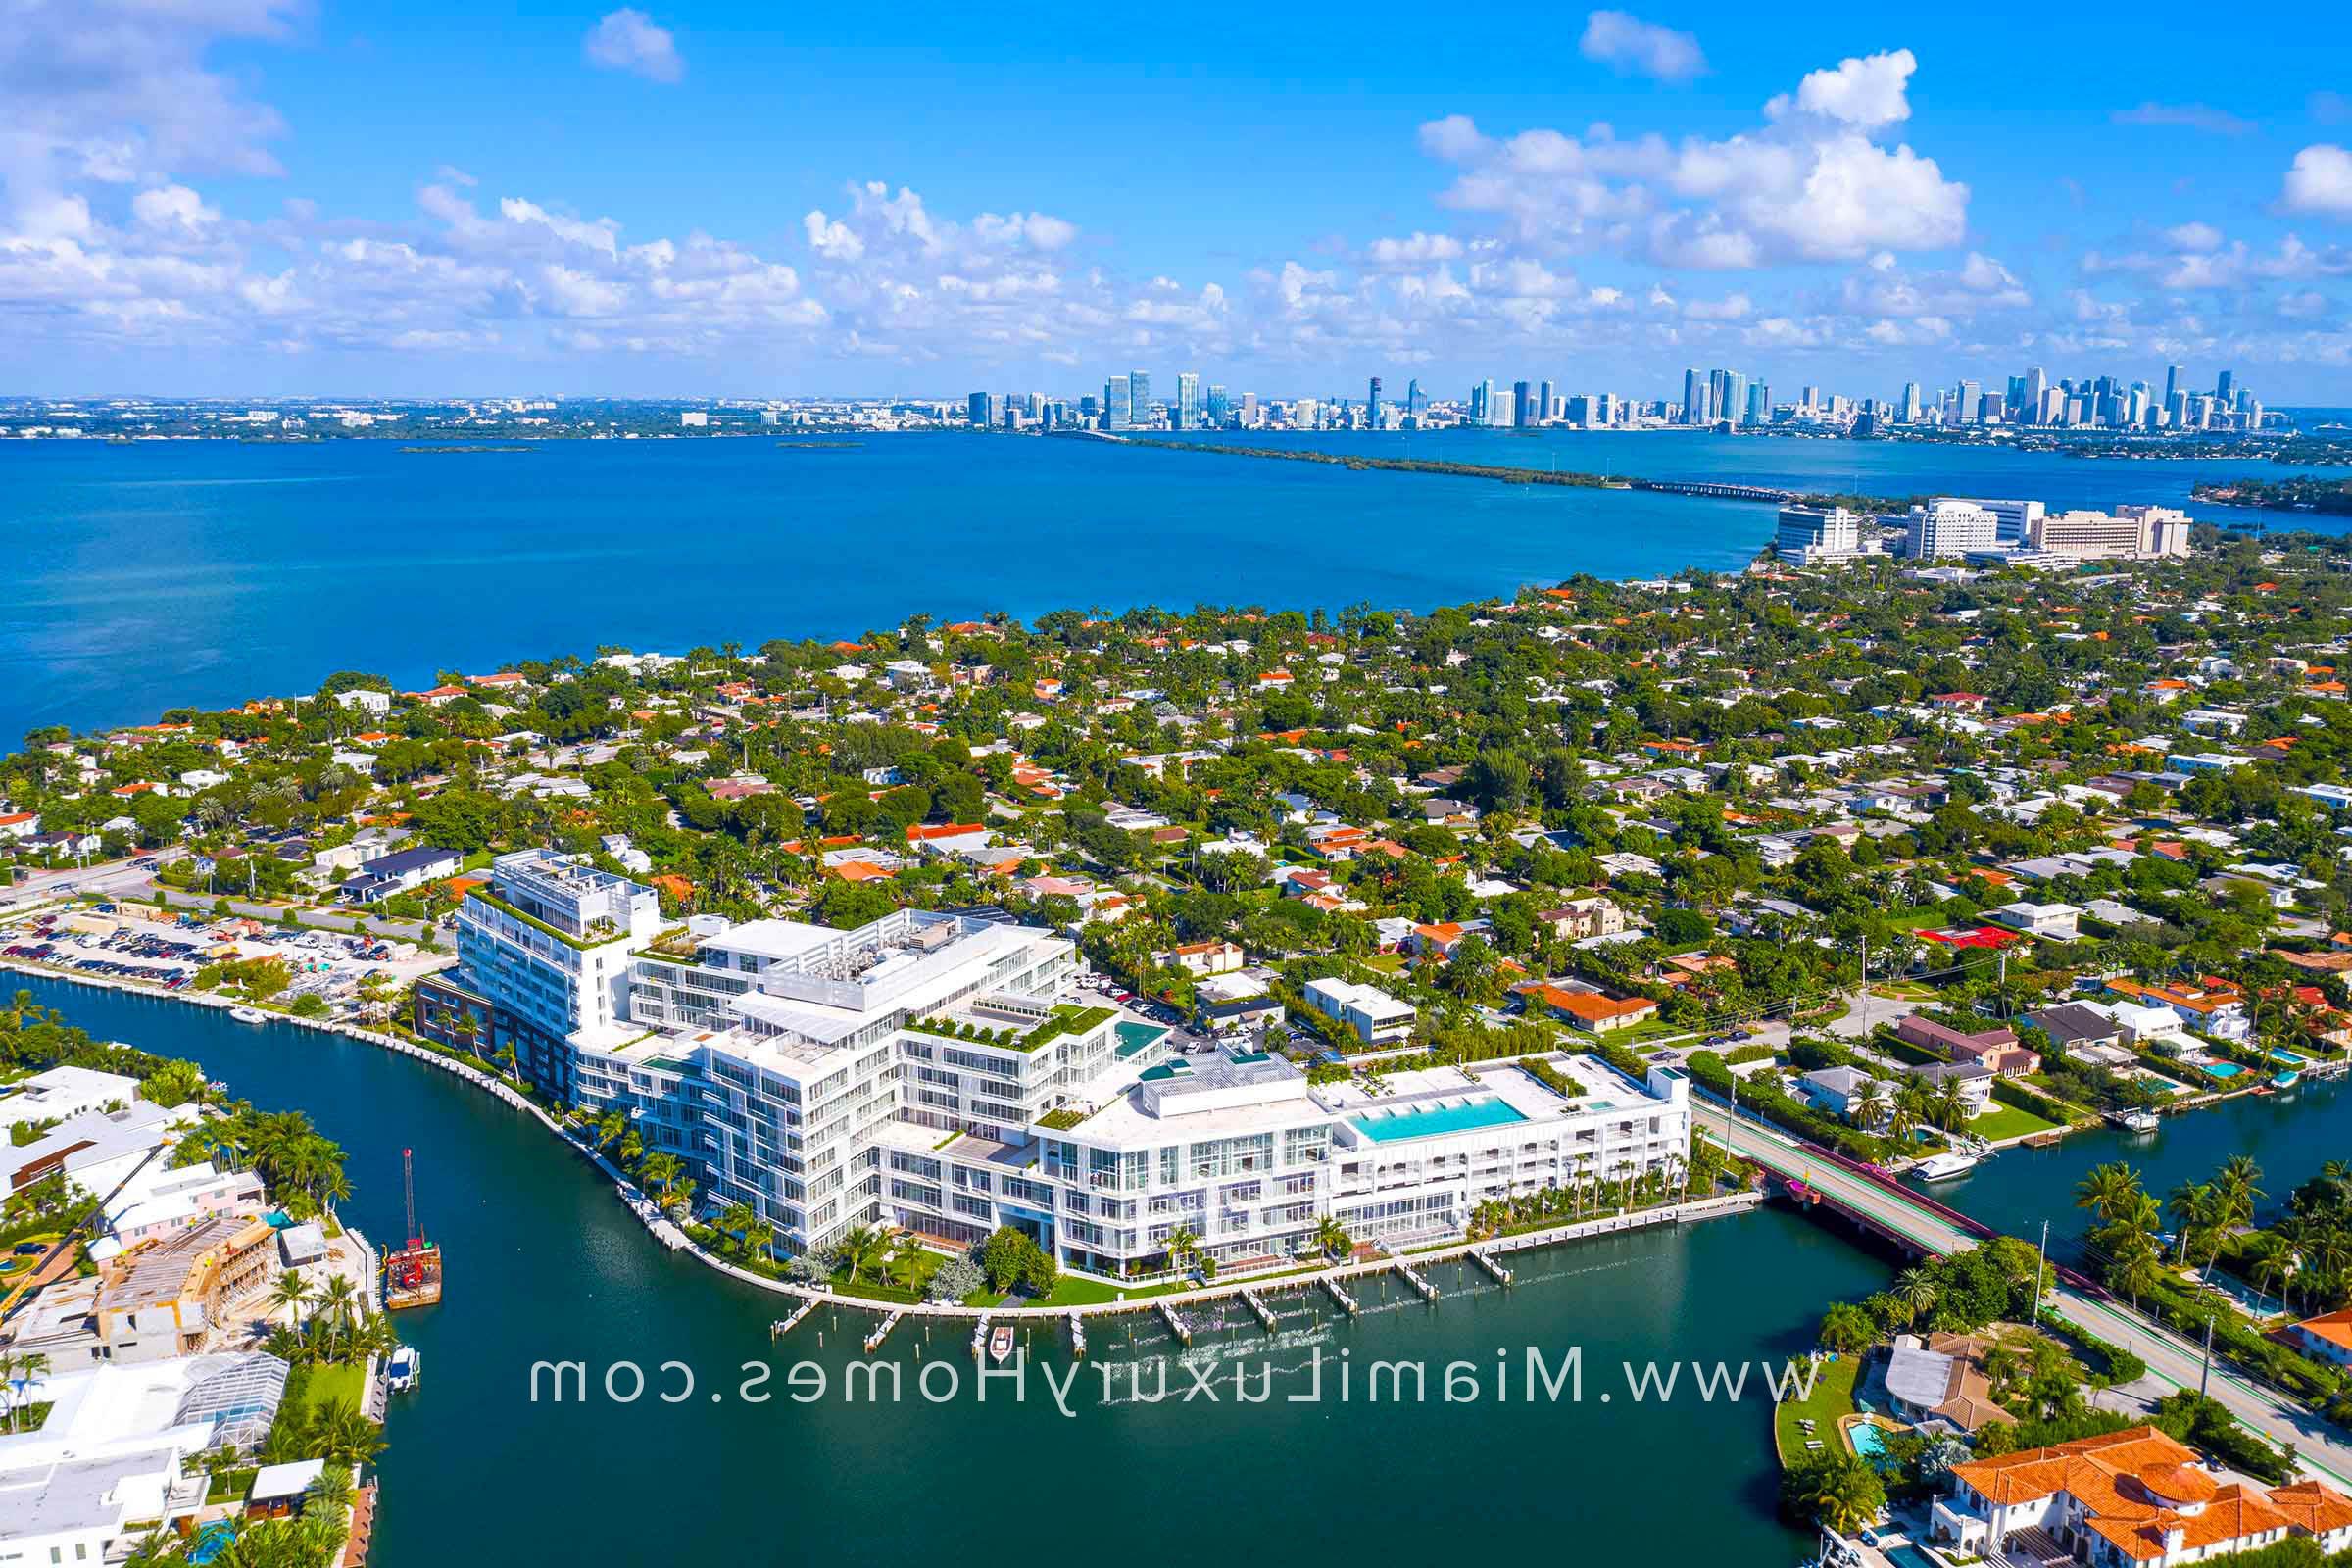 迈阿密海滩丽思卡尔顿公寓鸟瞰图